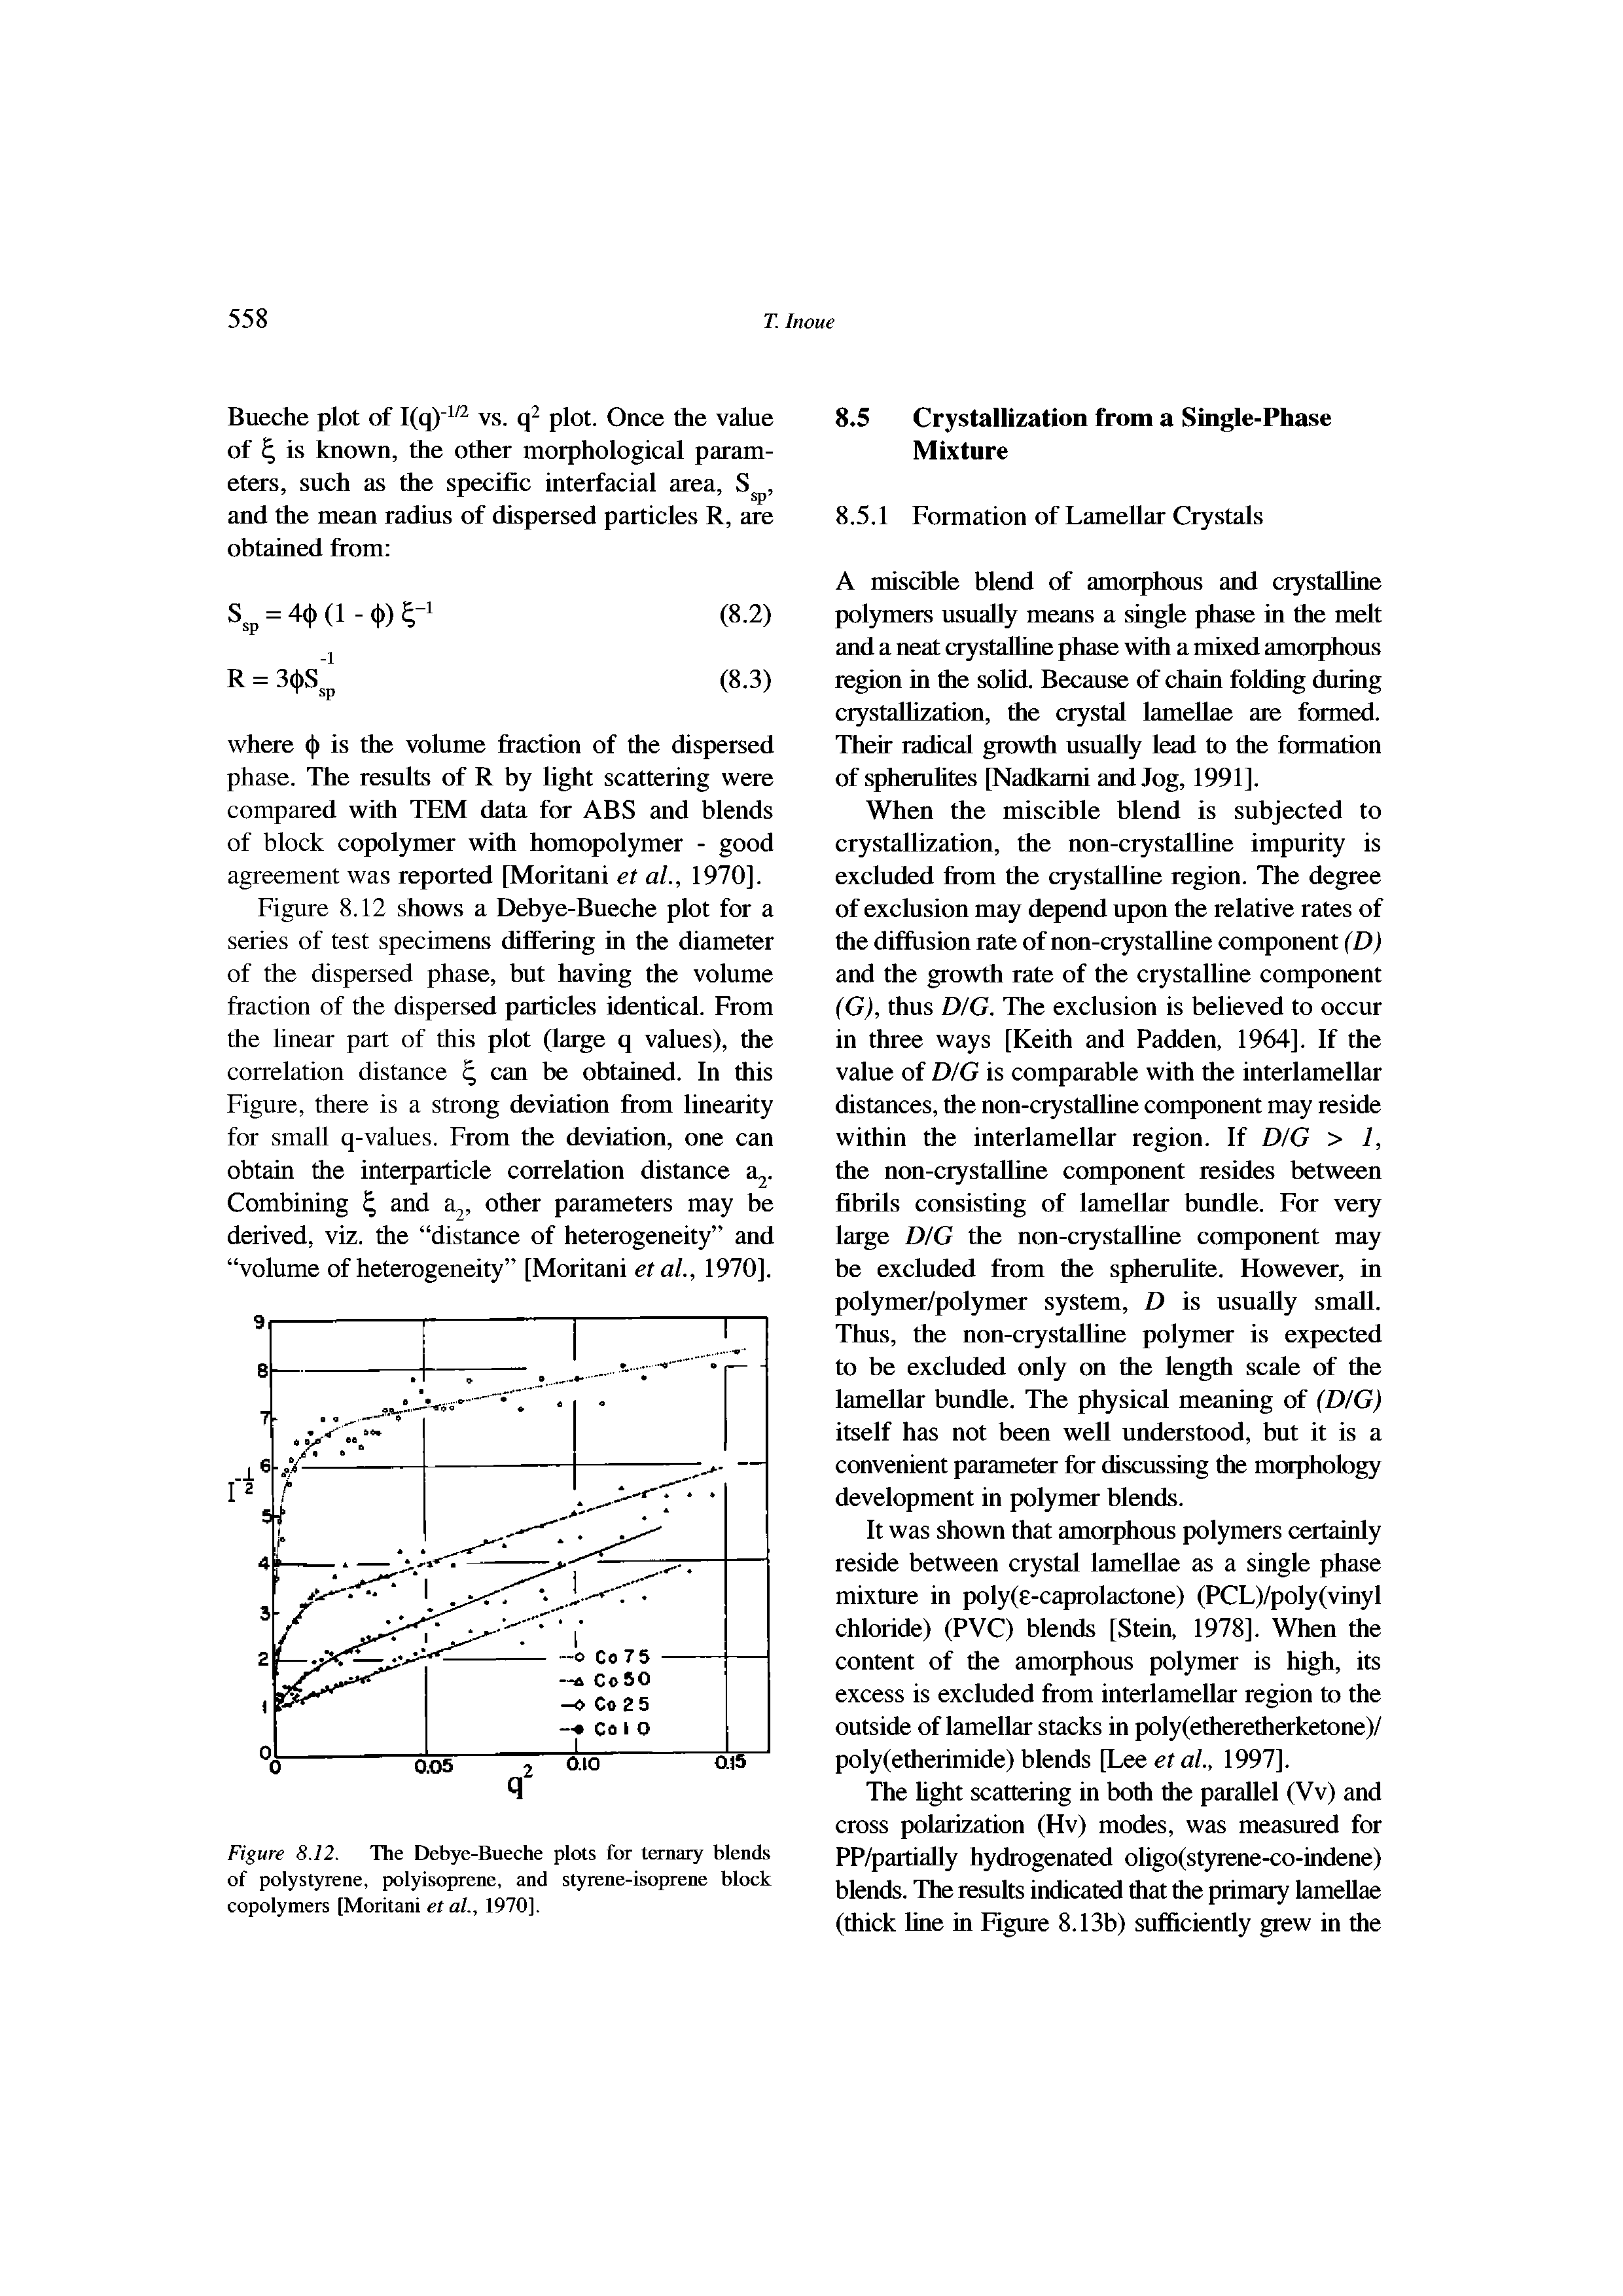 Figure 8.12. The Debye-Bueche plots for ternary blends of polystyrene, polyisoprene, and styrene-isoprene block copolymers [Moritani et at, 1970],...